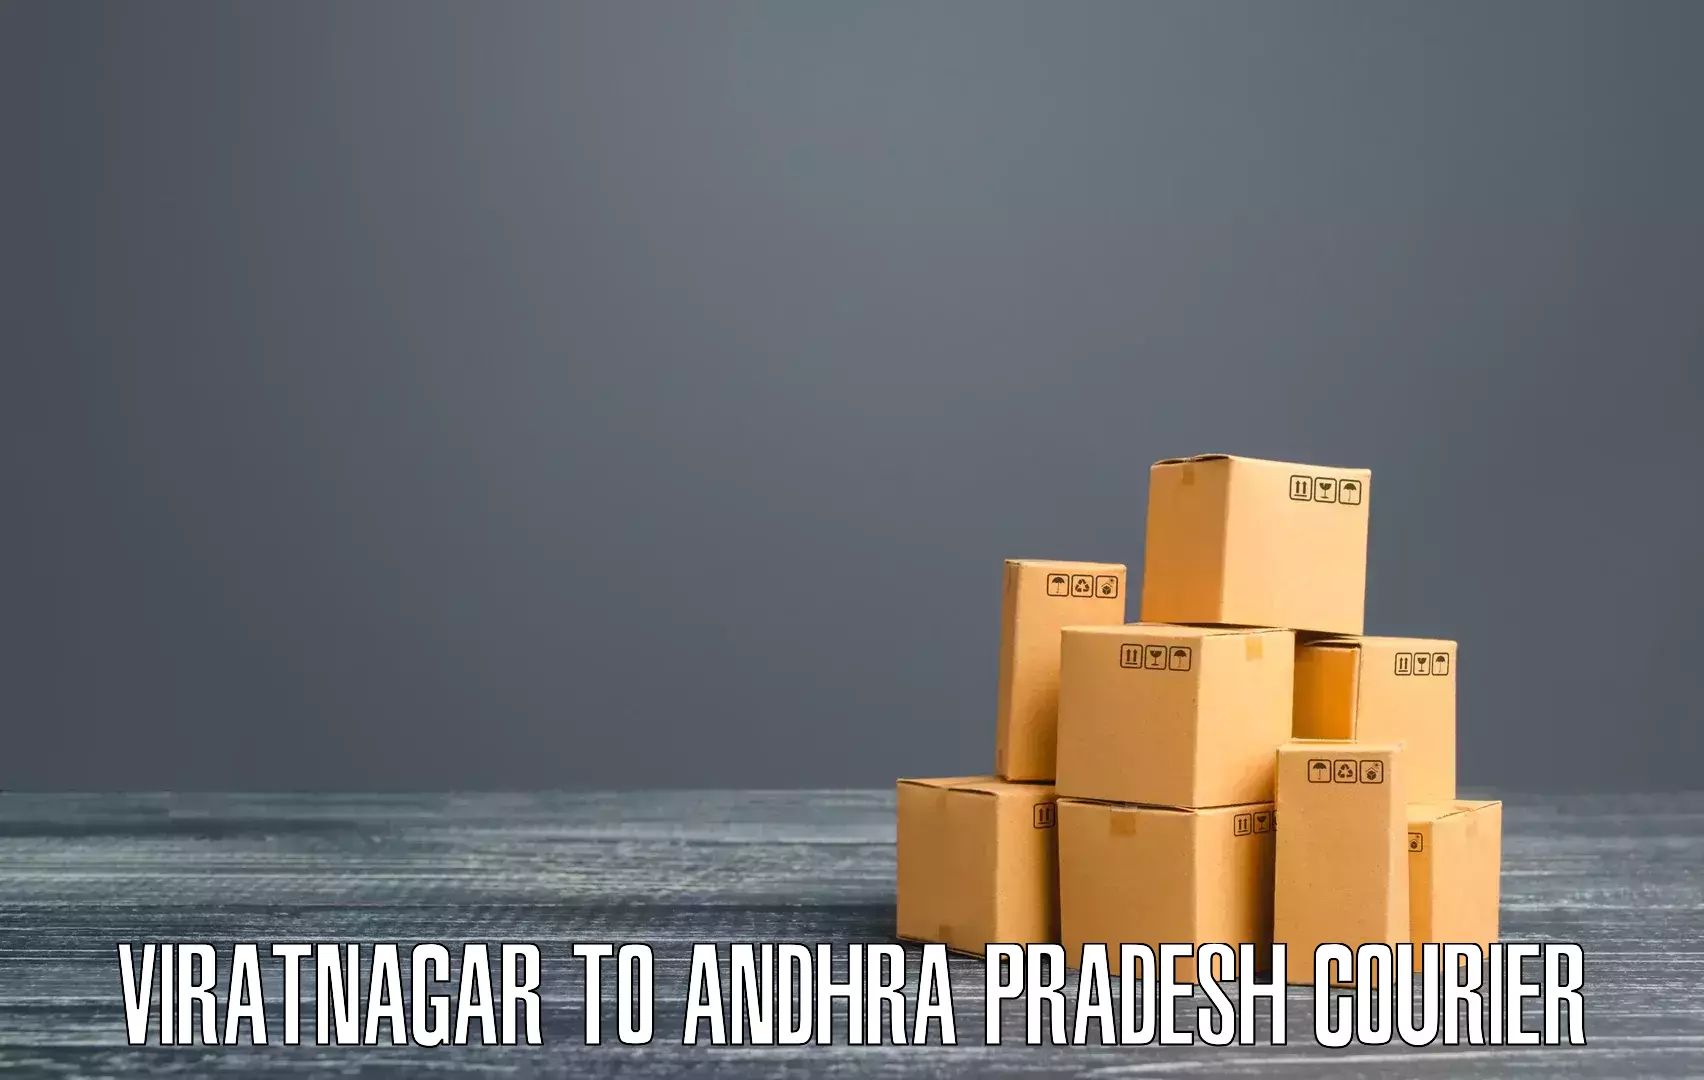 Advanced shipping services Viratnagar to Gudivada